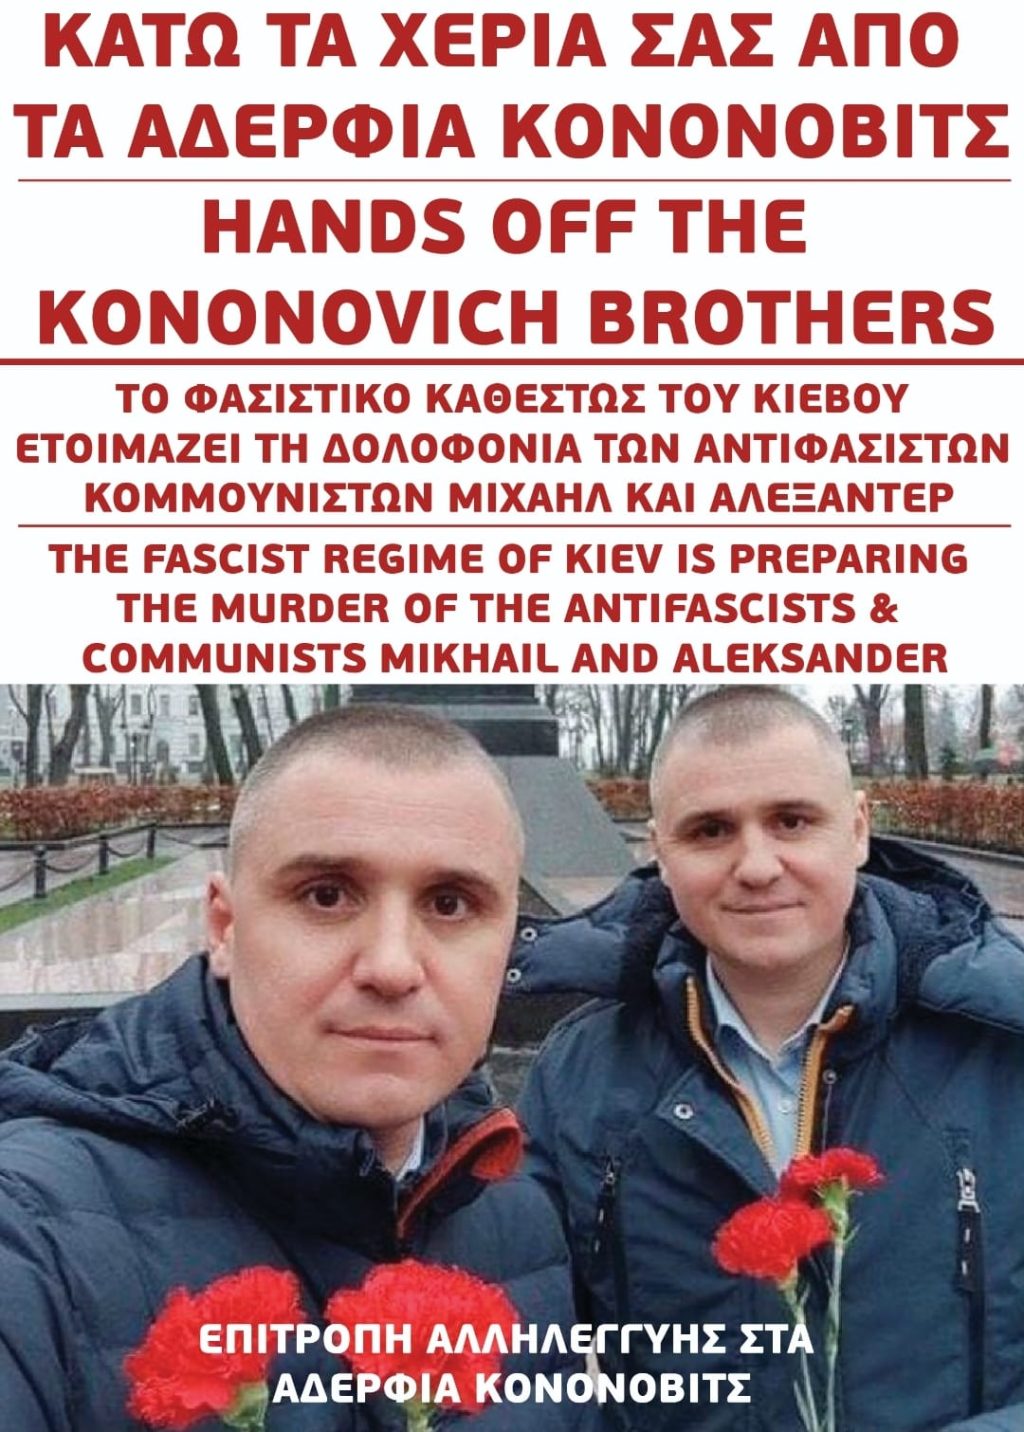 ΑδερφιαΚονονοβιτςΕπιτροπηΑλληλεγγυης